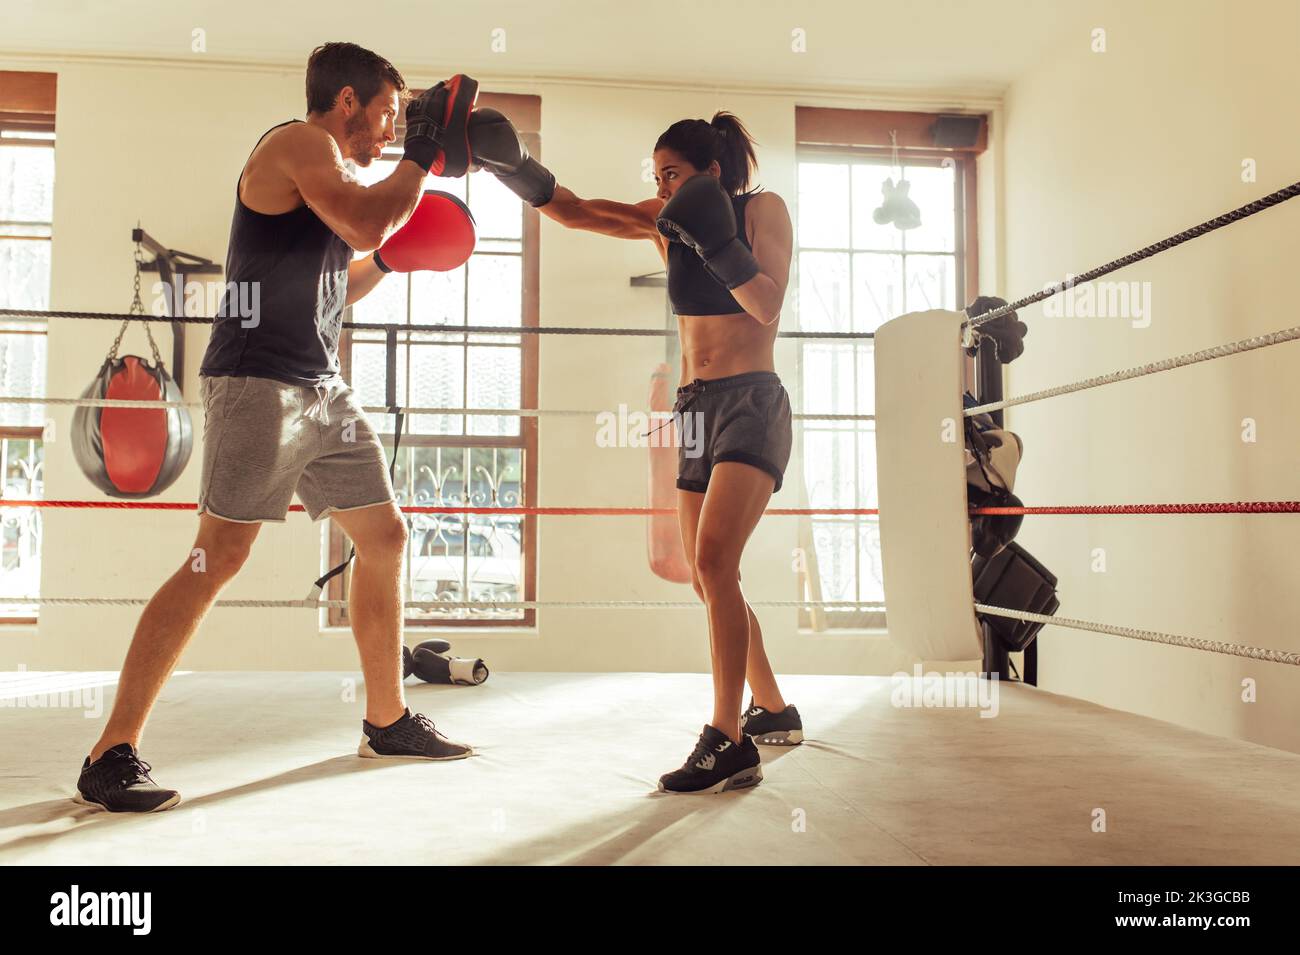 Männlicher Trainer hilft einer jungen Boxerin mit umgekehrten Schlägen in einem Boxring. Boxtrainer trainiert eine sportliche junge Frau im Fitnessstudio. Stockfoto